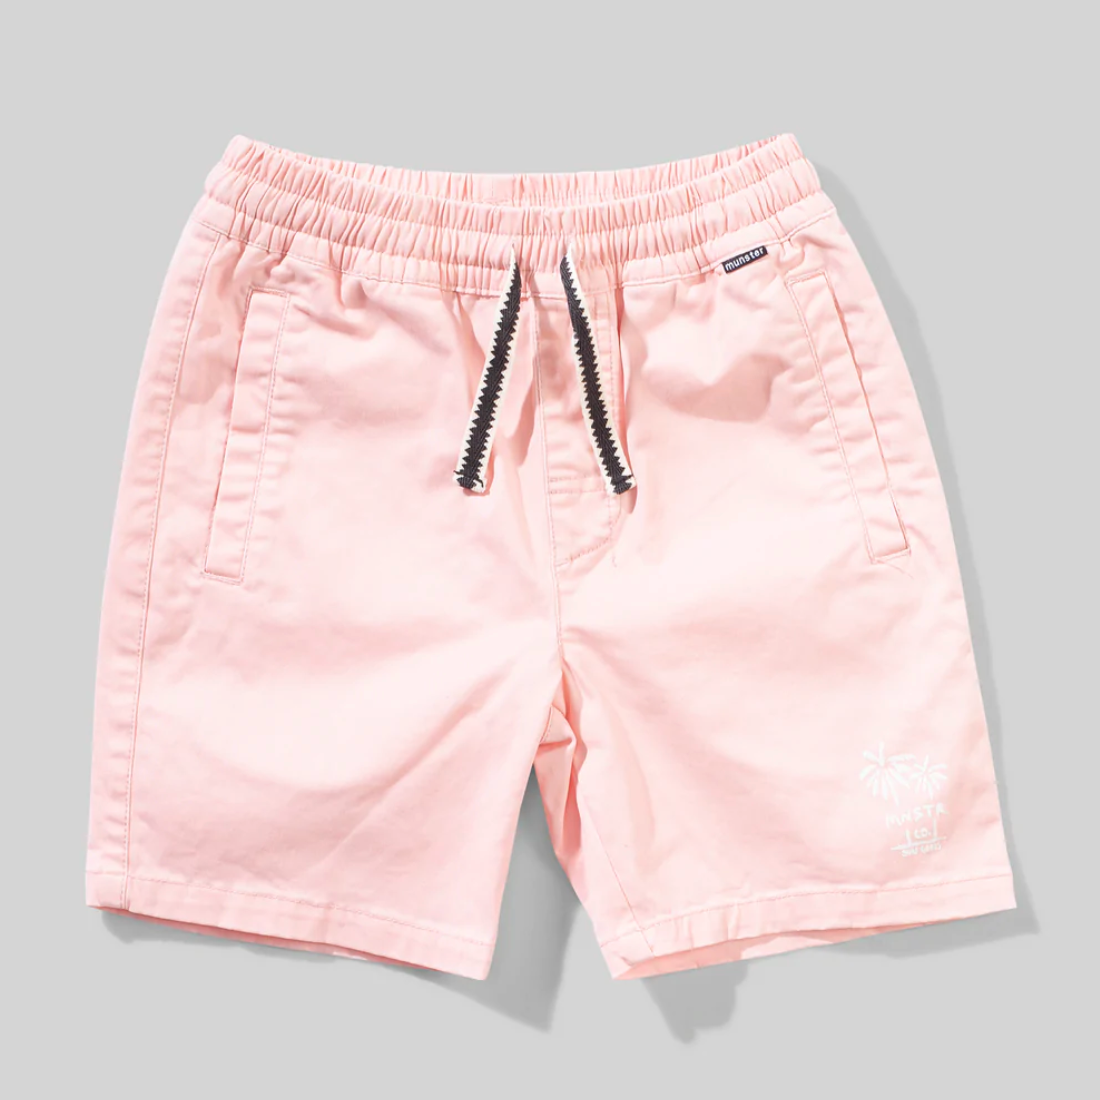 sikke short in light pink